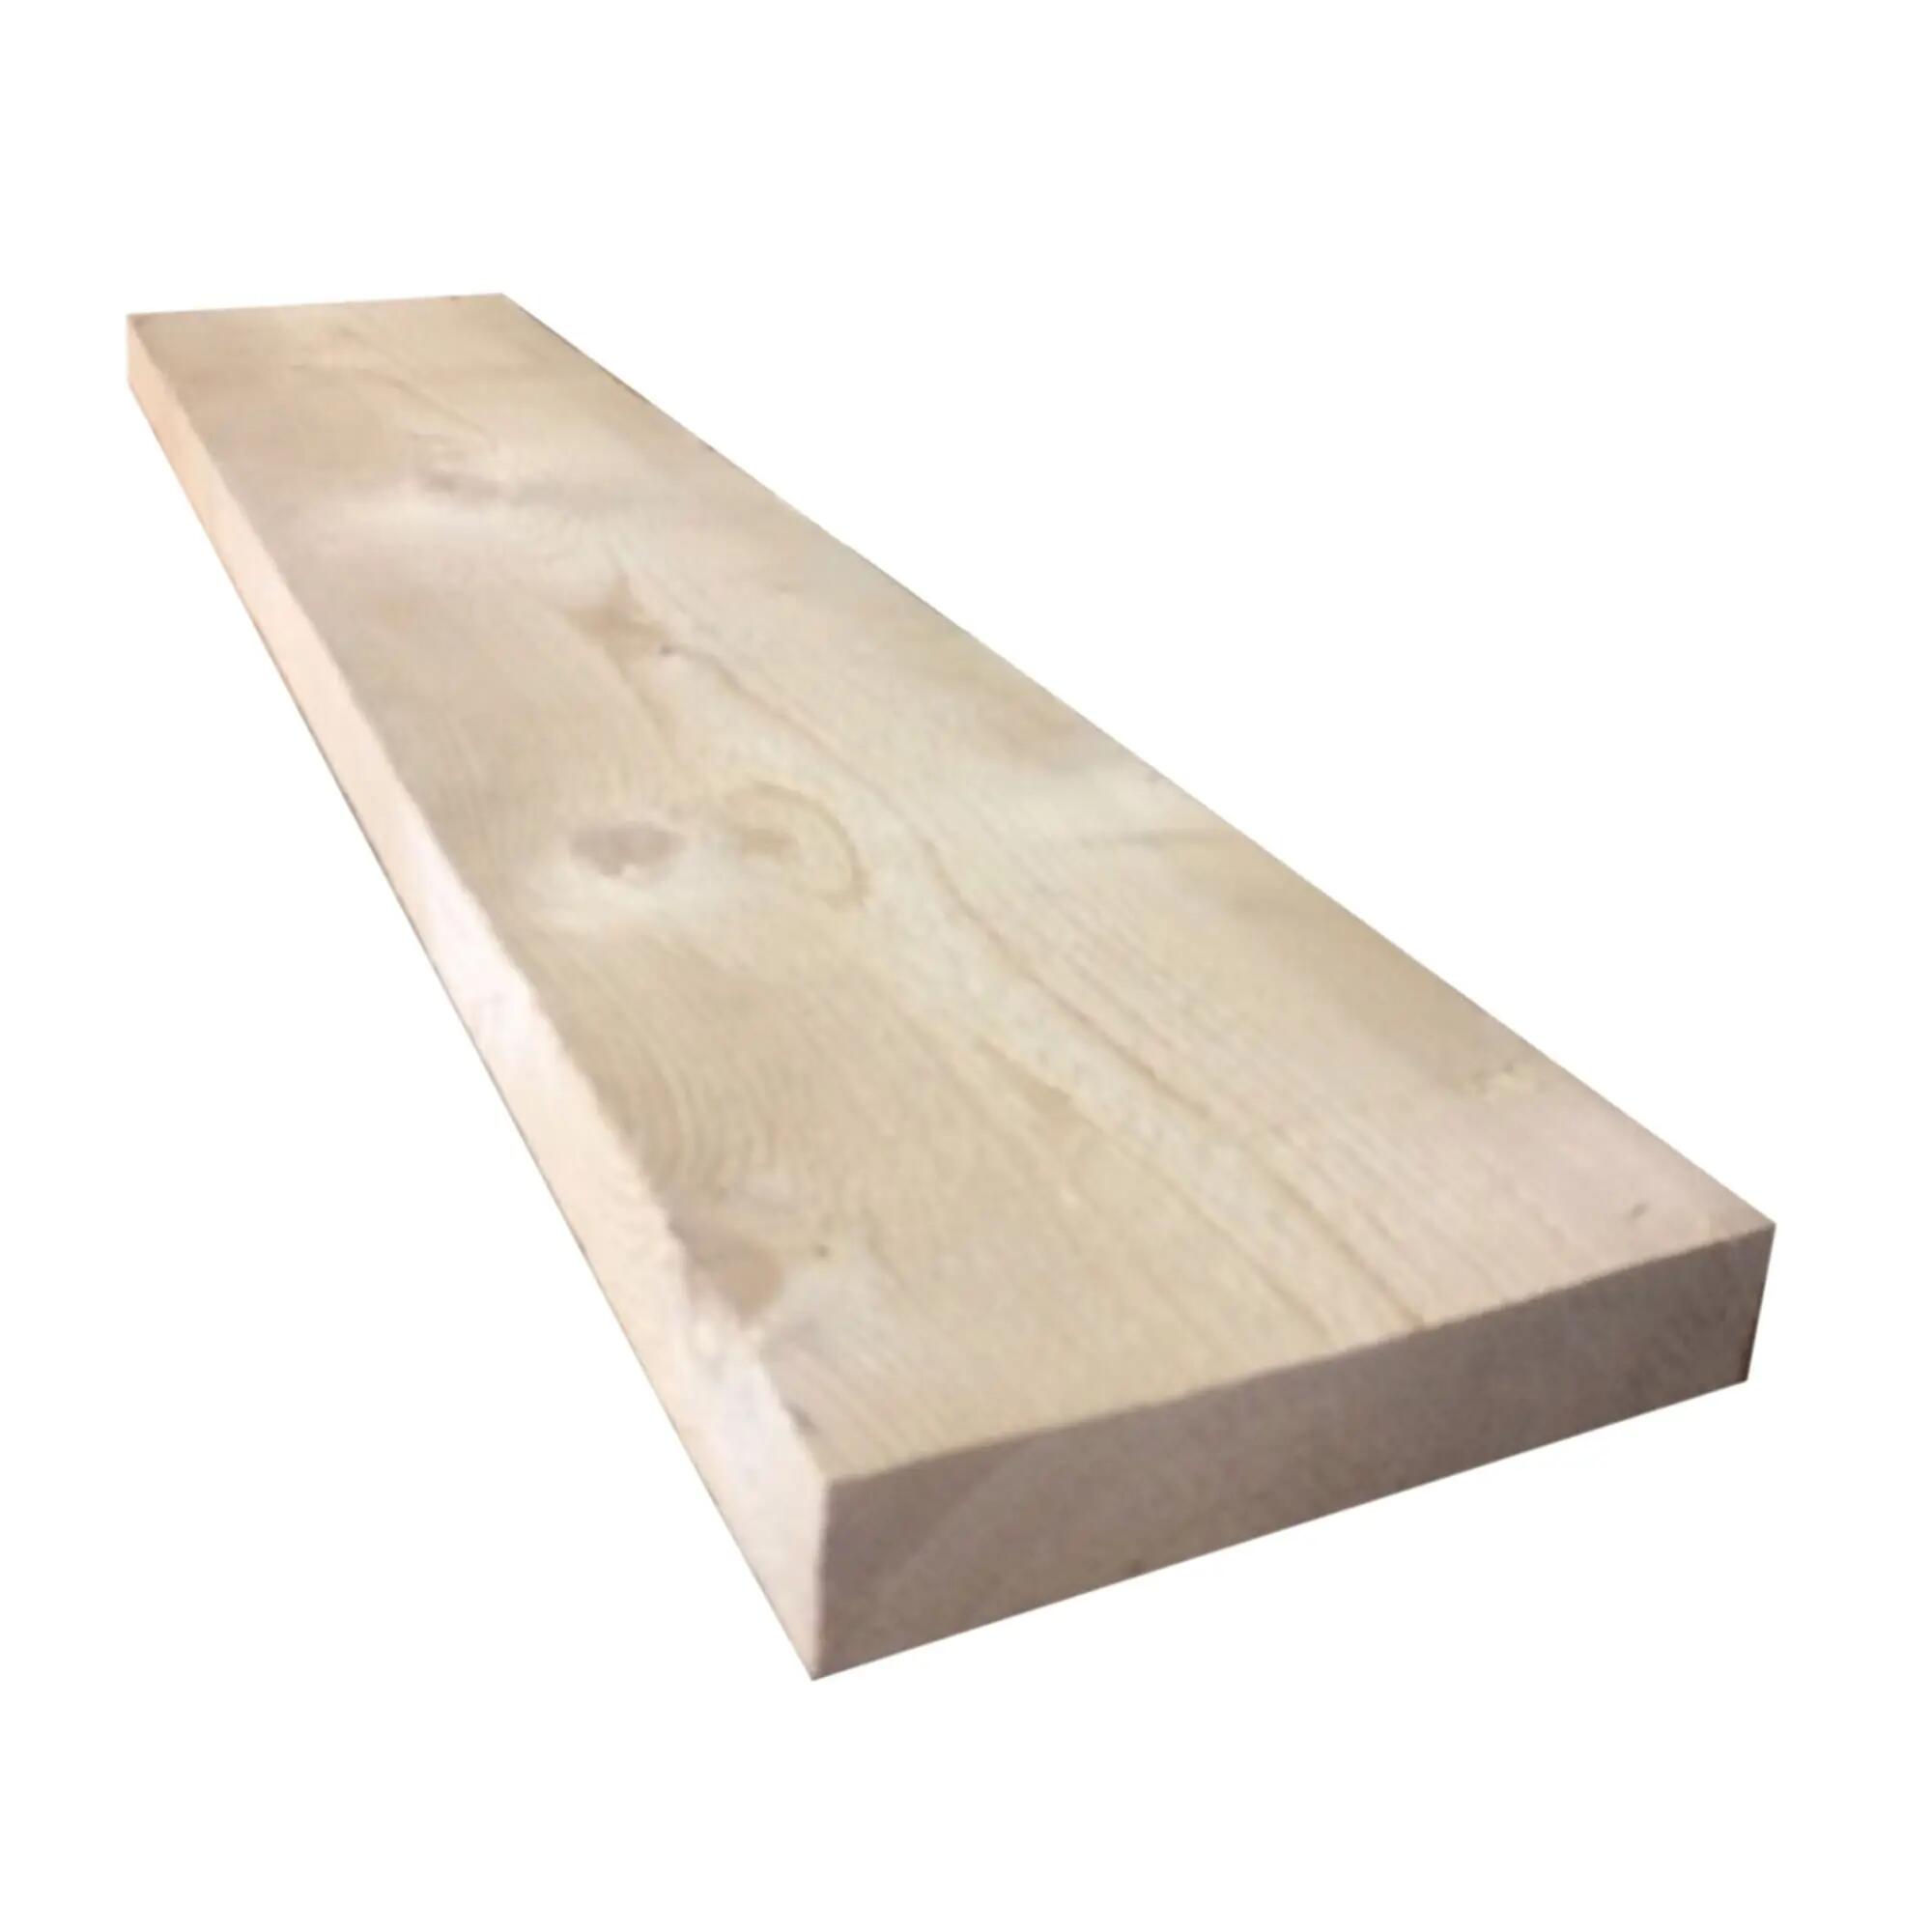 Tavola massello in legno di abete, 25 x 200 cm Sp 50 mm naturale